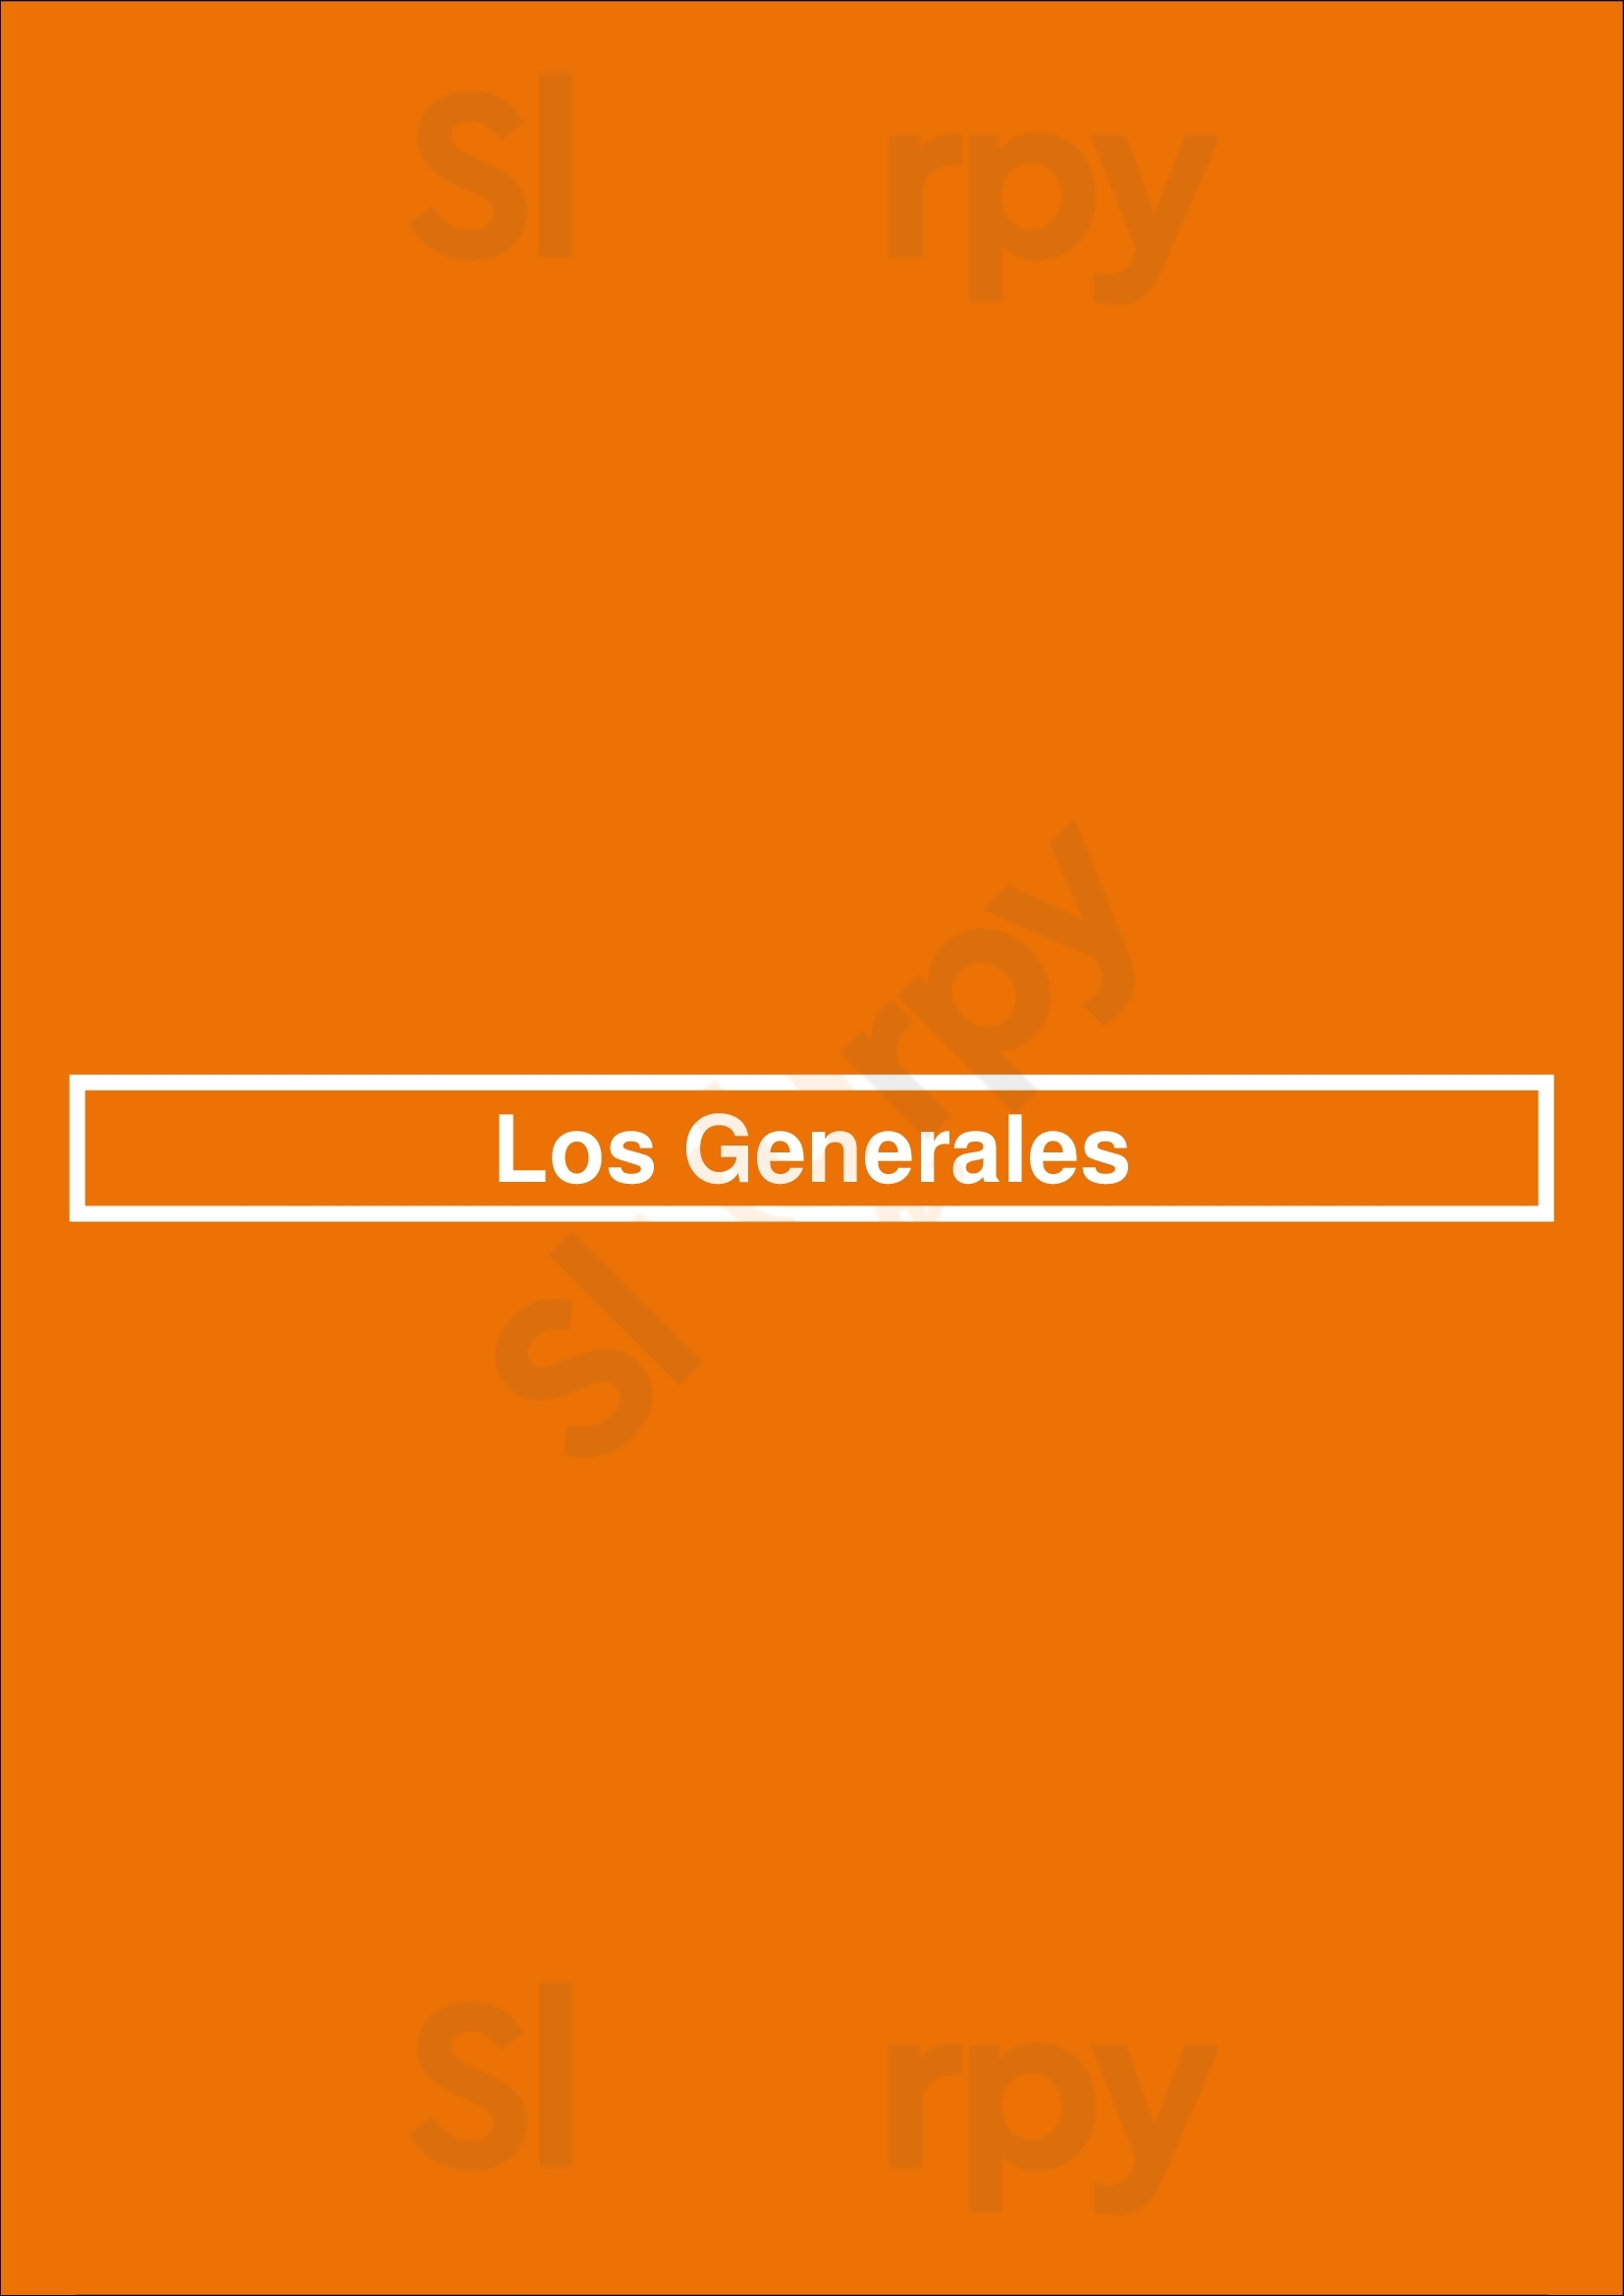 Los Generales San Antonio Menu - 1